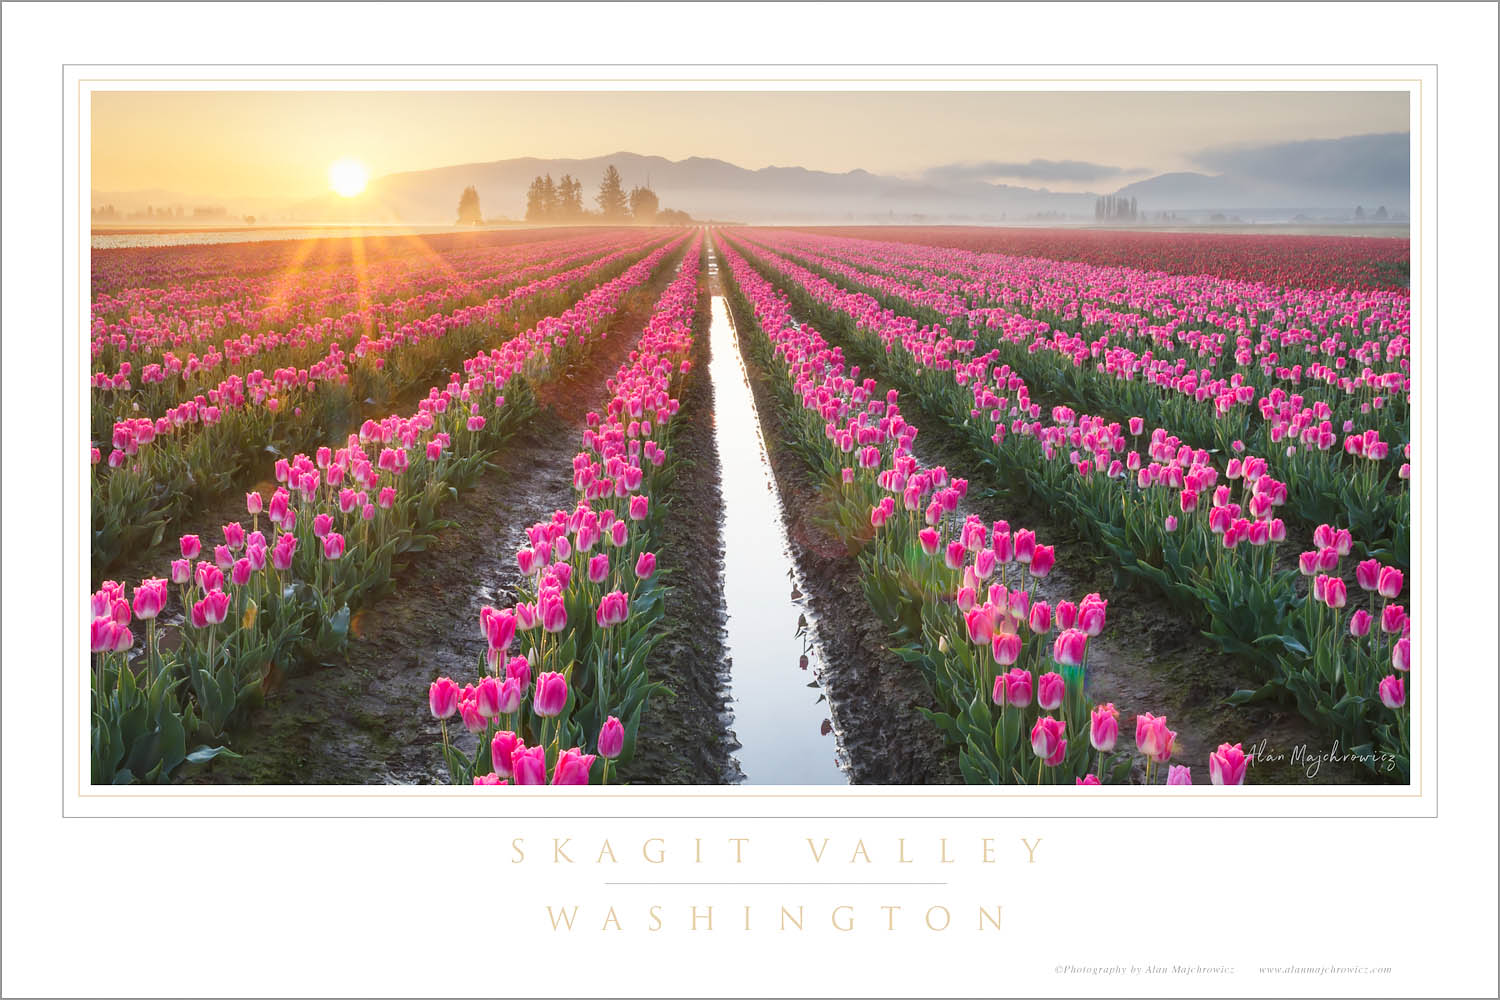 Sunrise over Skagit Valley tulip fields, Washington